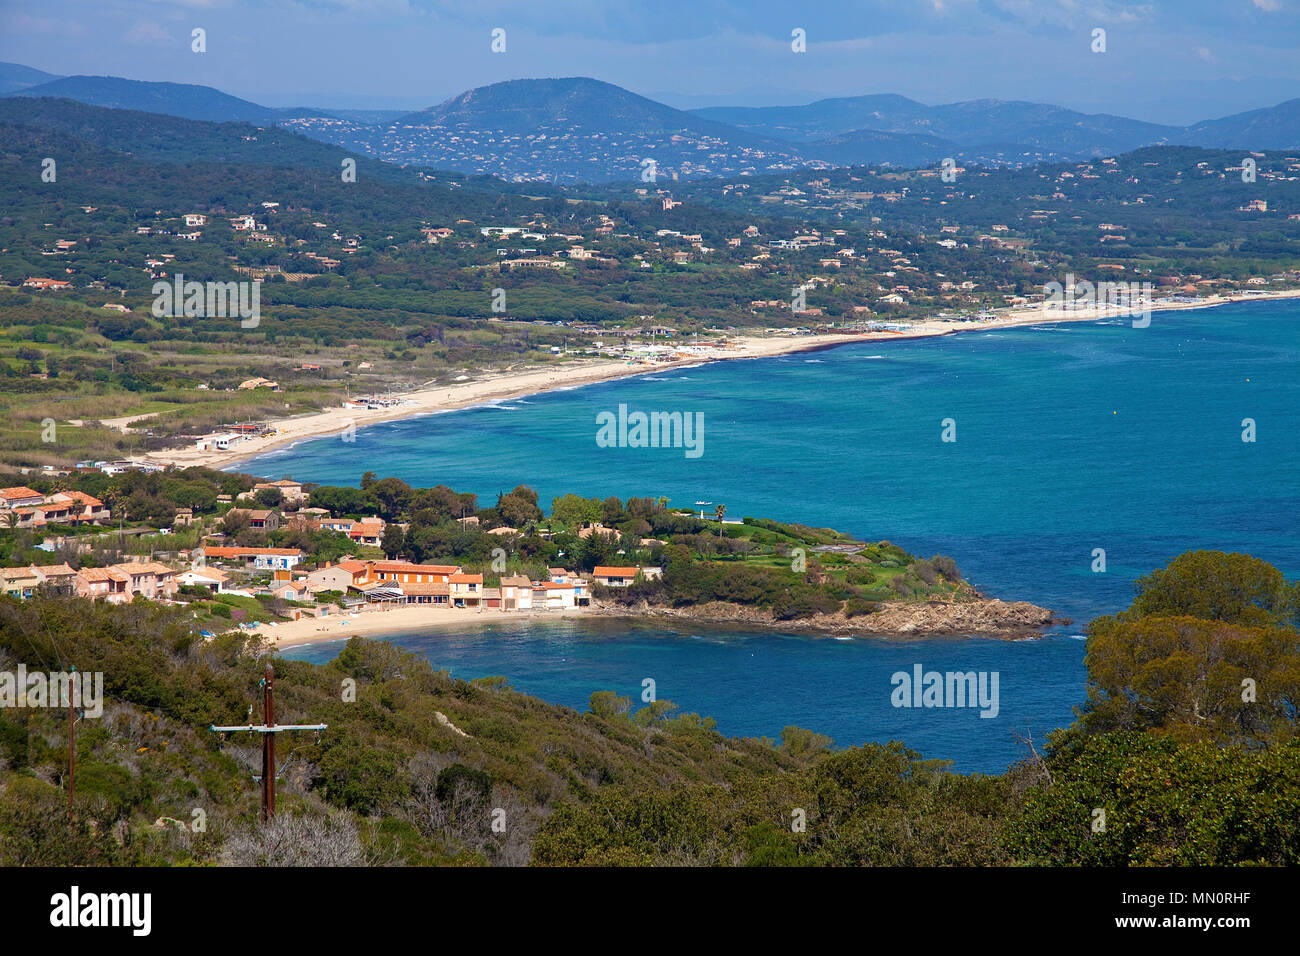 View from Cape Camarat on Gulf of Saint-Tropez, Cote d'Azur, Département Var, Provence-Alpes-Côte d’Azur, South France, France, Europe Stock Photo